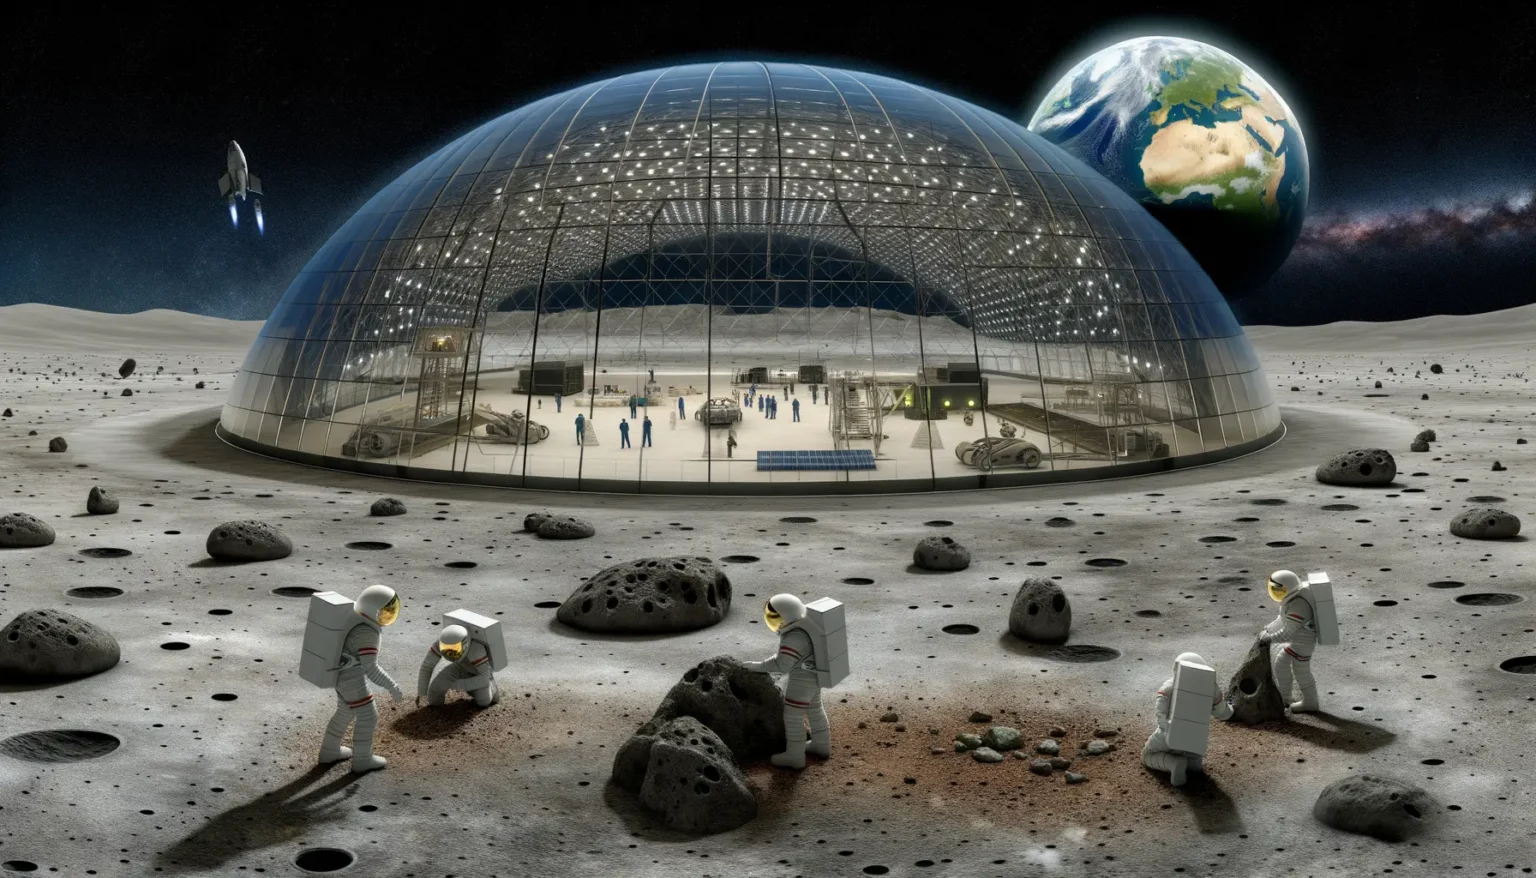 Eine futuristische Mondbasis mit einer großen, kuppelförmigen Struktur, in der Menschen zu sehen sind. Im Hintergrund ist die Erde im Weltraum sichtbar. Astronauten in Raumanzügen sammeln Proben auf der Mondoberfläche, und ein Raumfahrzeug im Stil eines Space Shuttles startet in der Ferne.